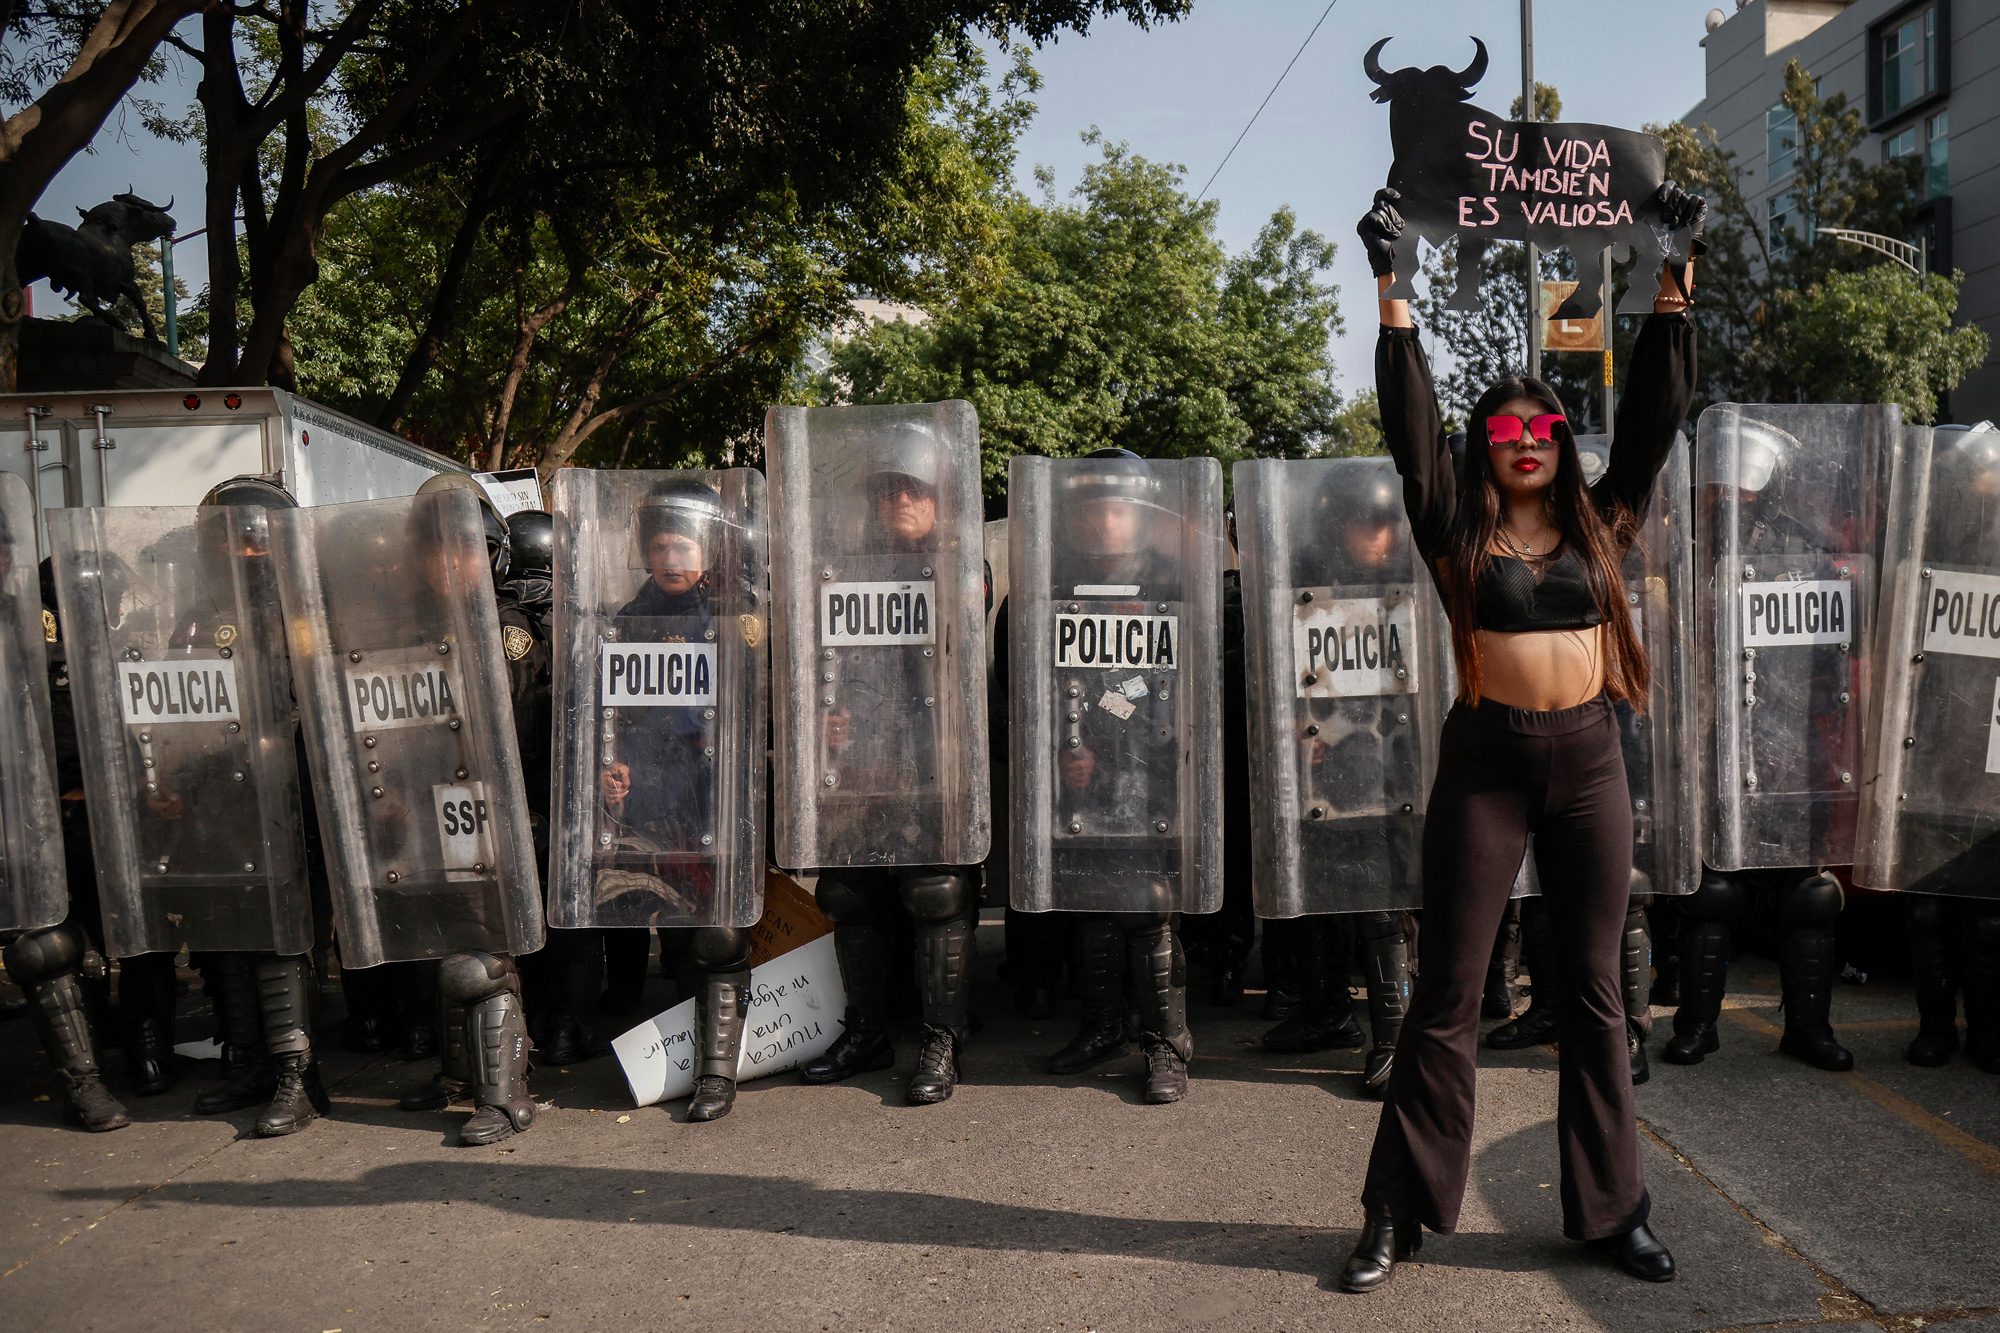 Протестувальниця тримає плакат перед поліцією під час акції проти кориди біля площі Пласа-де-Торос-Мексико в Мехіко, 28 січня 2024 року. Активісти протестували проти відновлення кориди в Мехіко після того, як Верховний суд скасував попередню заборону. Фото: RODRIGO OROPEZA/AFP via Getty Images